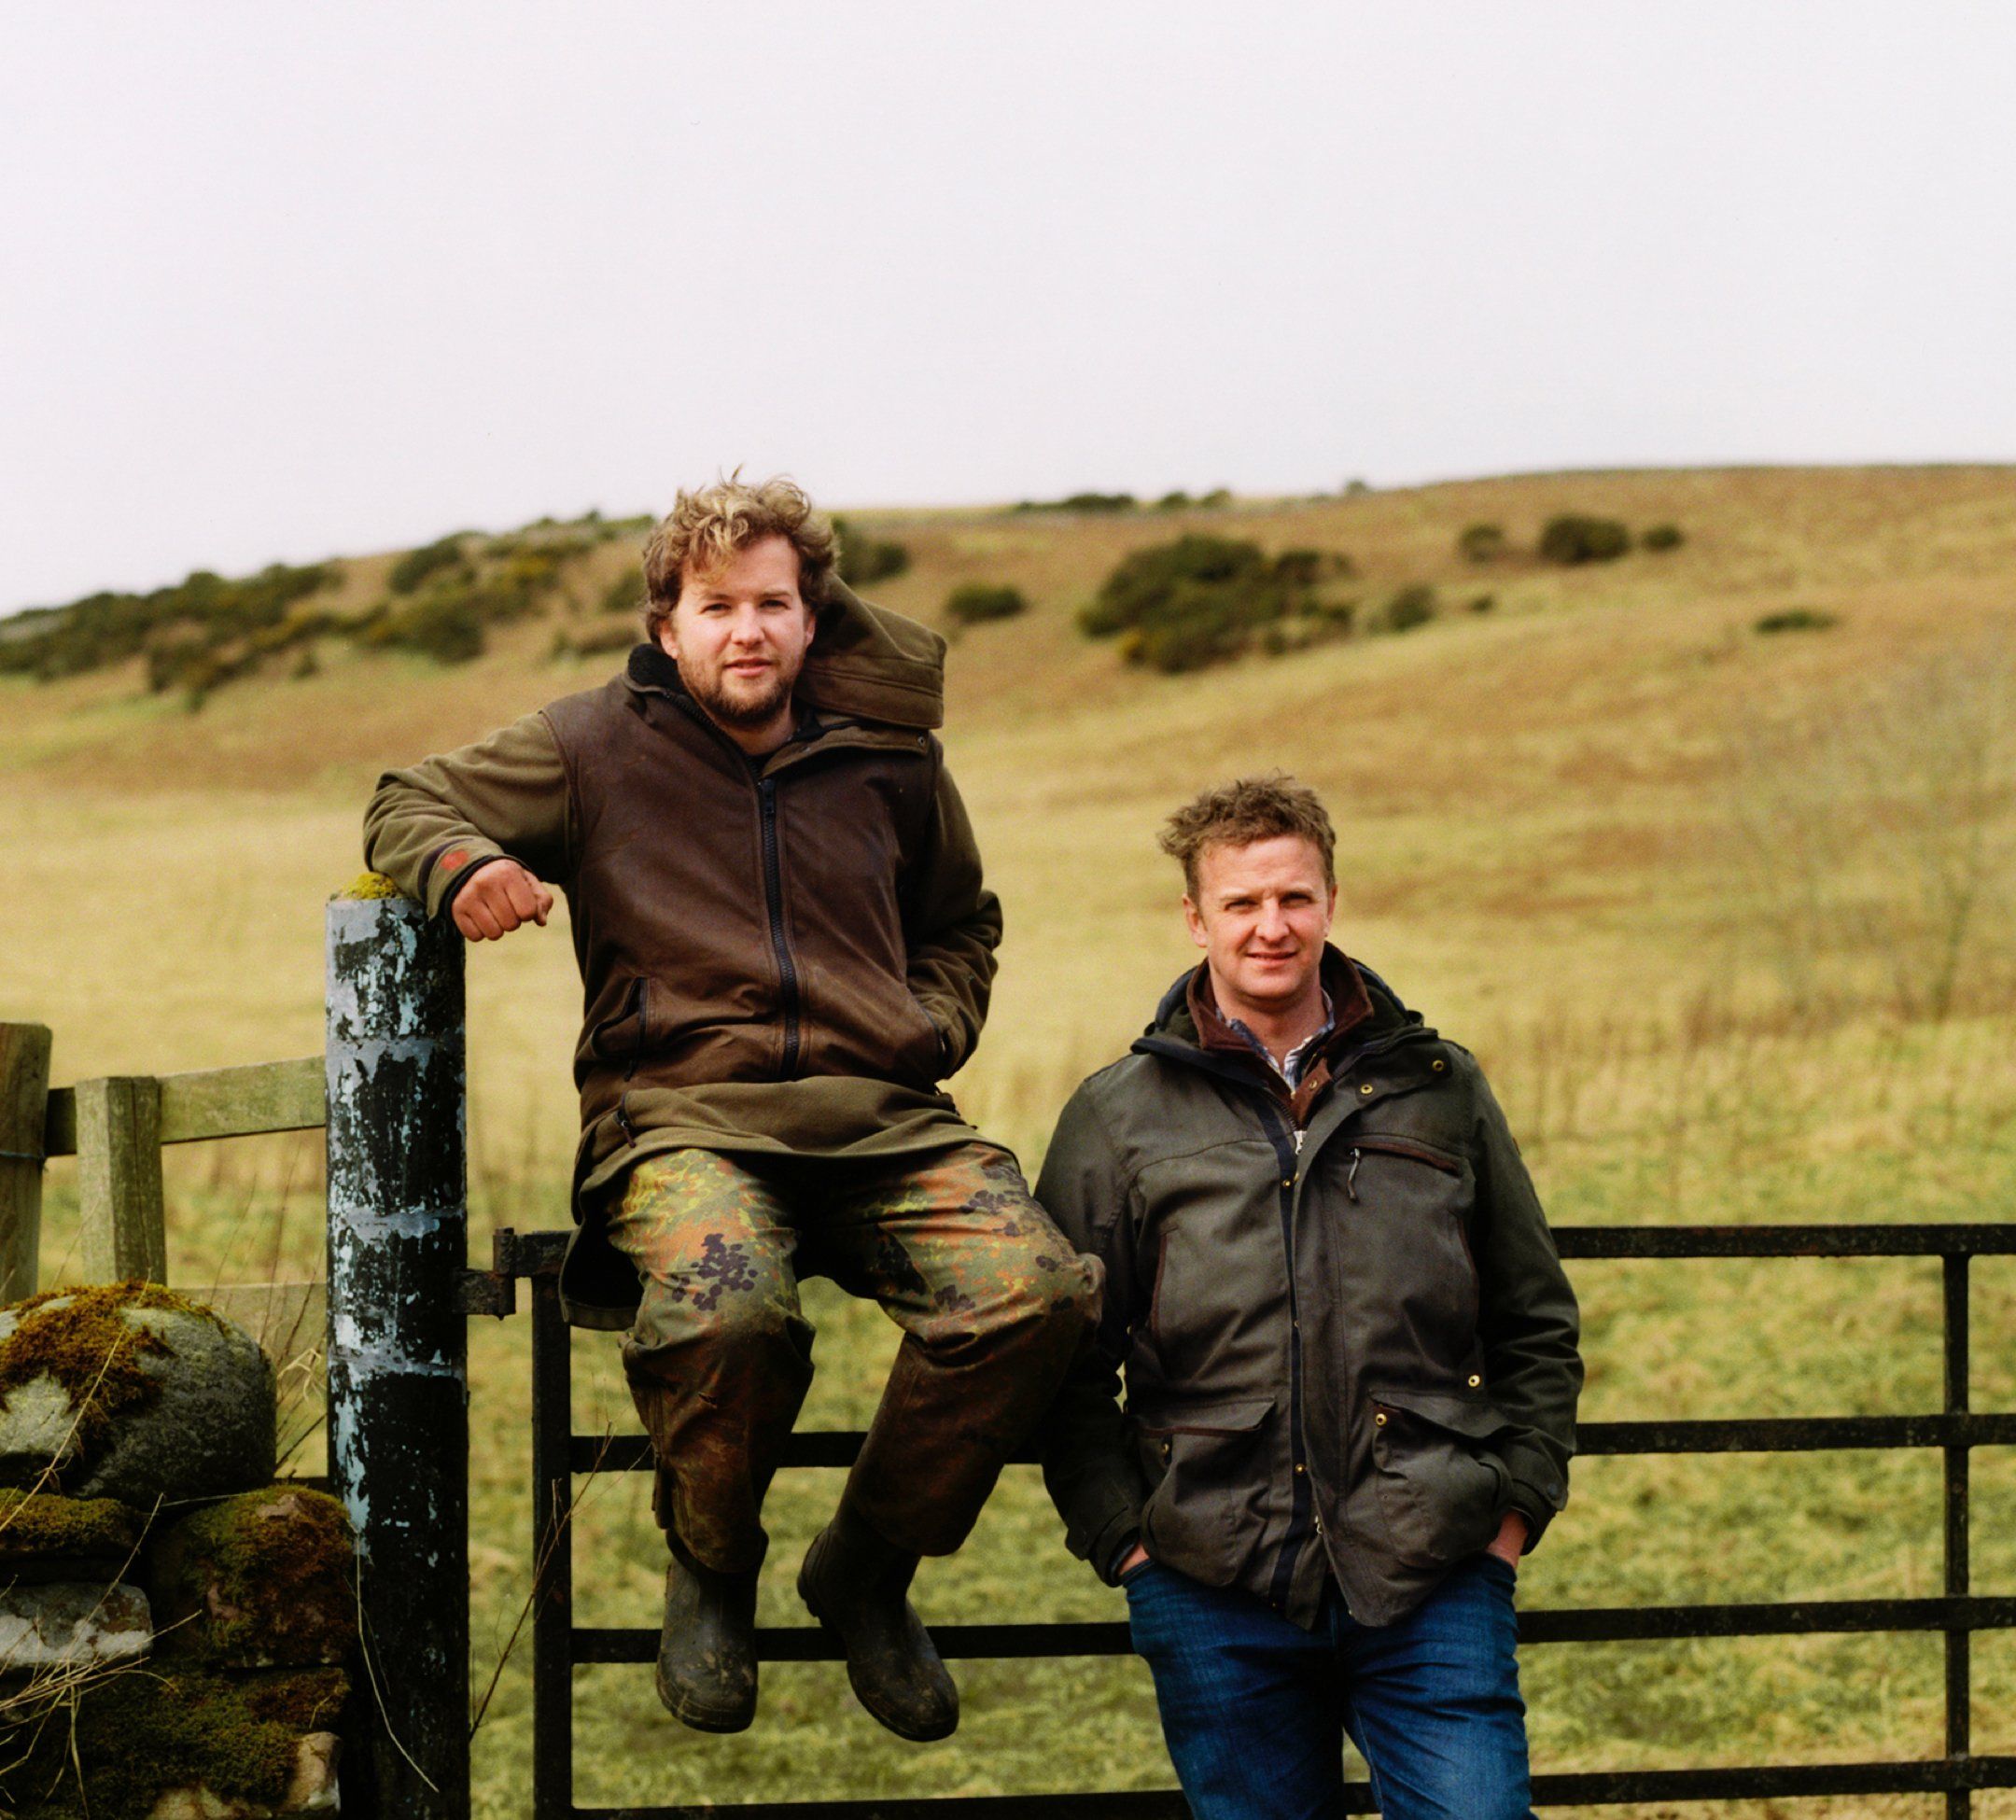 Die beiden Bauern Andrew und Robert Brewster sitzen in Arbeitskleidung auf einem Bauernhofzaun